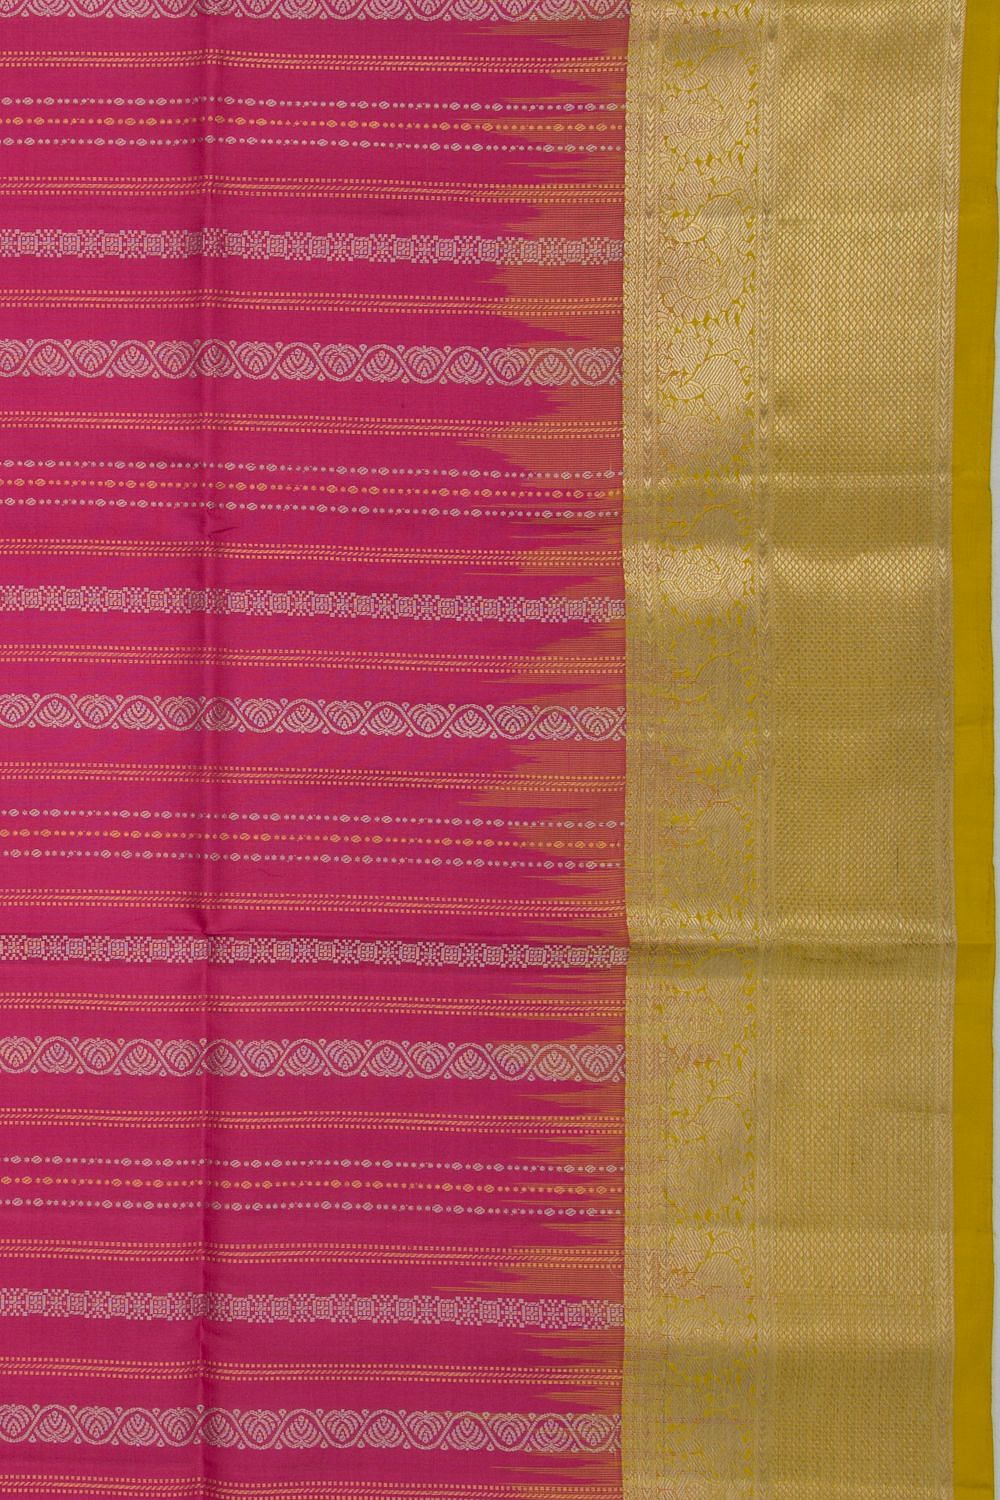 Silk Kanakavalli Kanjivaram Sari 060-01-49081 at Rs 20060 in Chennai